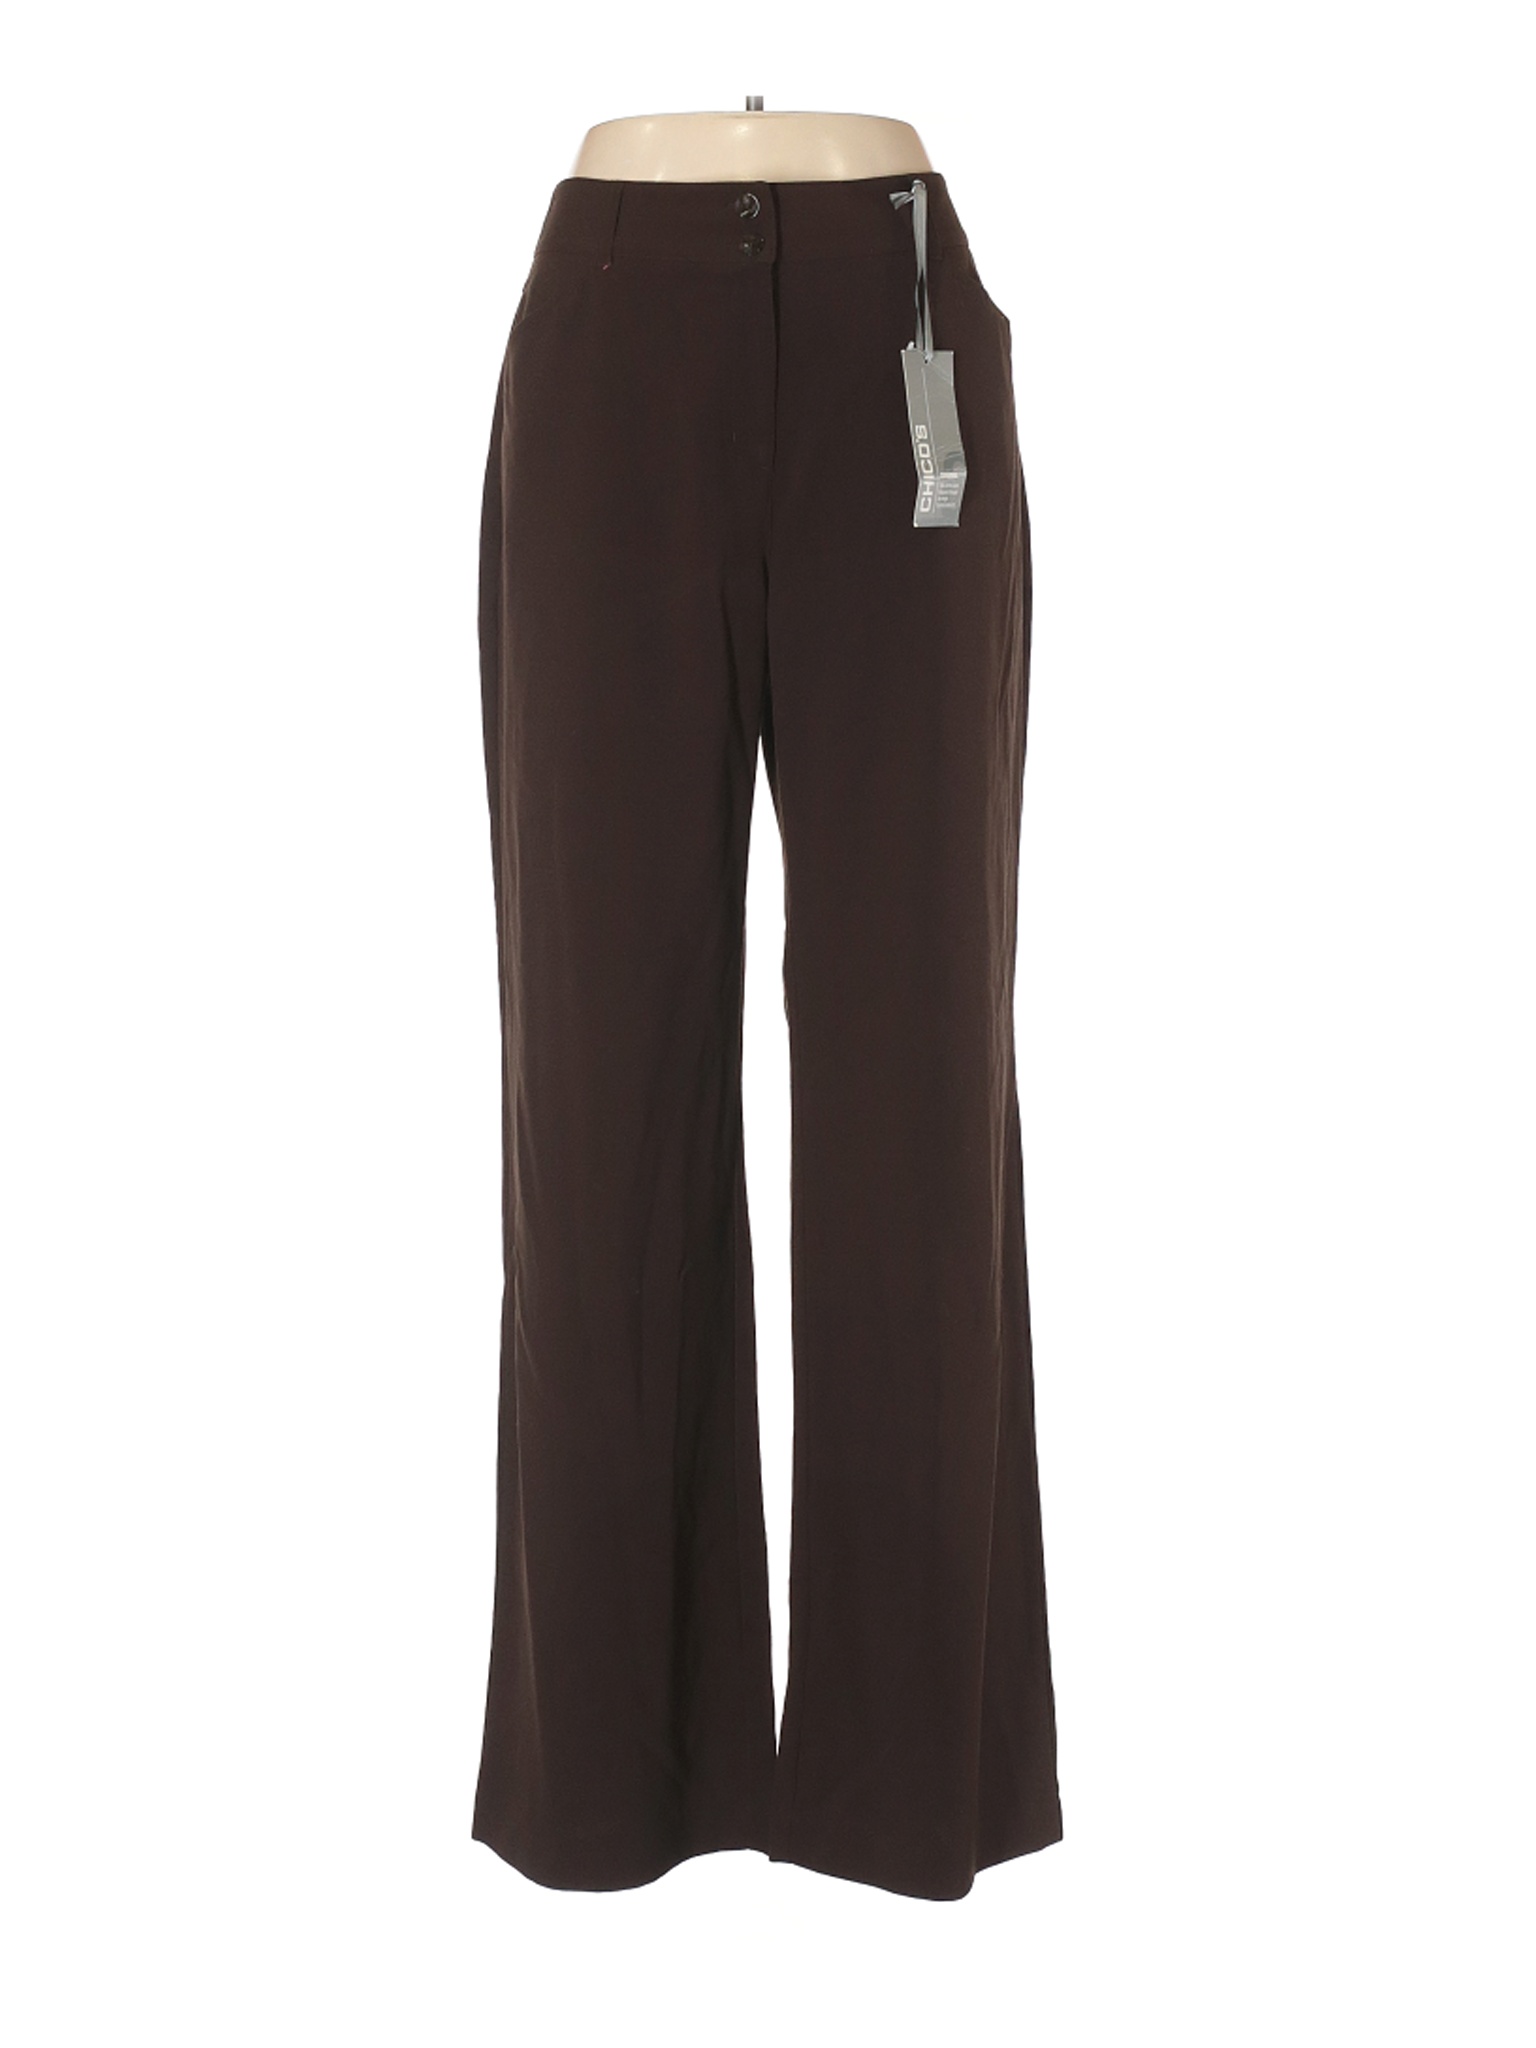 NWT Chico's Women Brown Dress Pants L | eBay